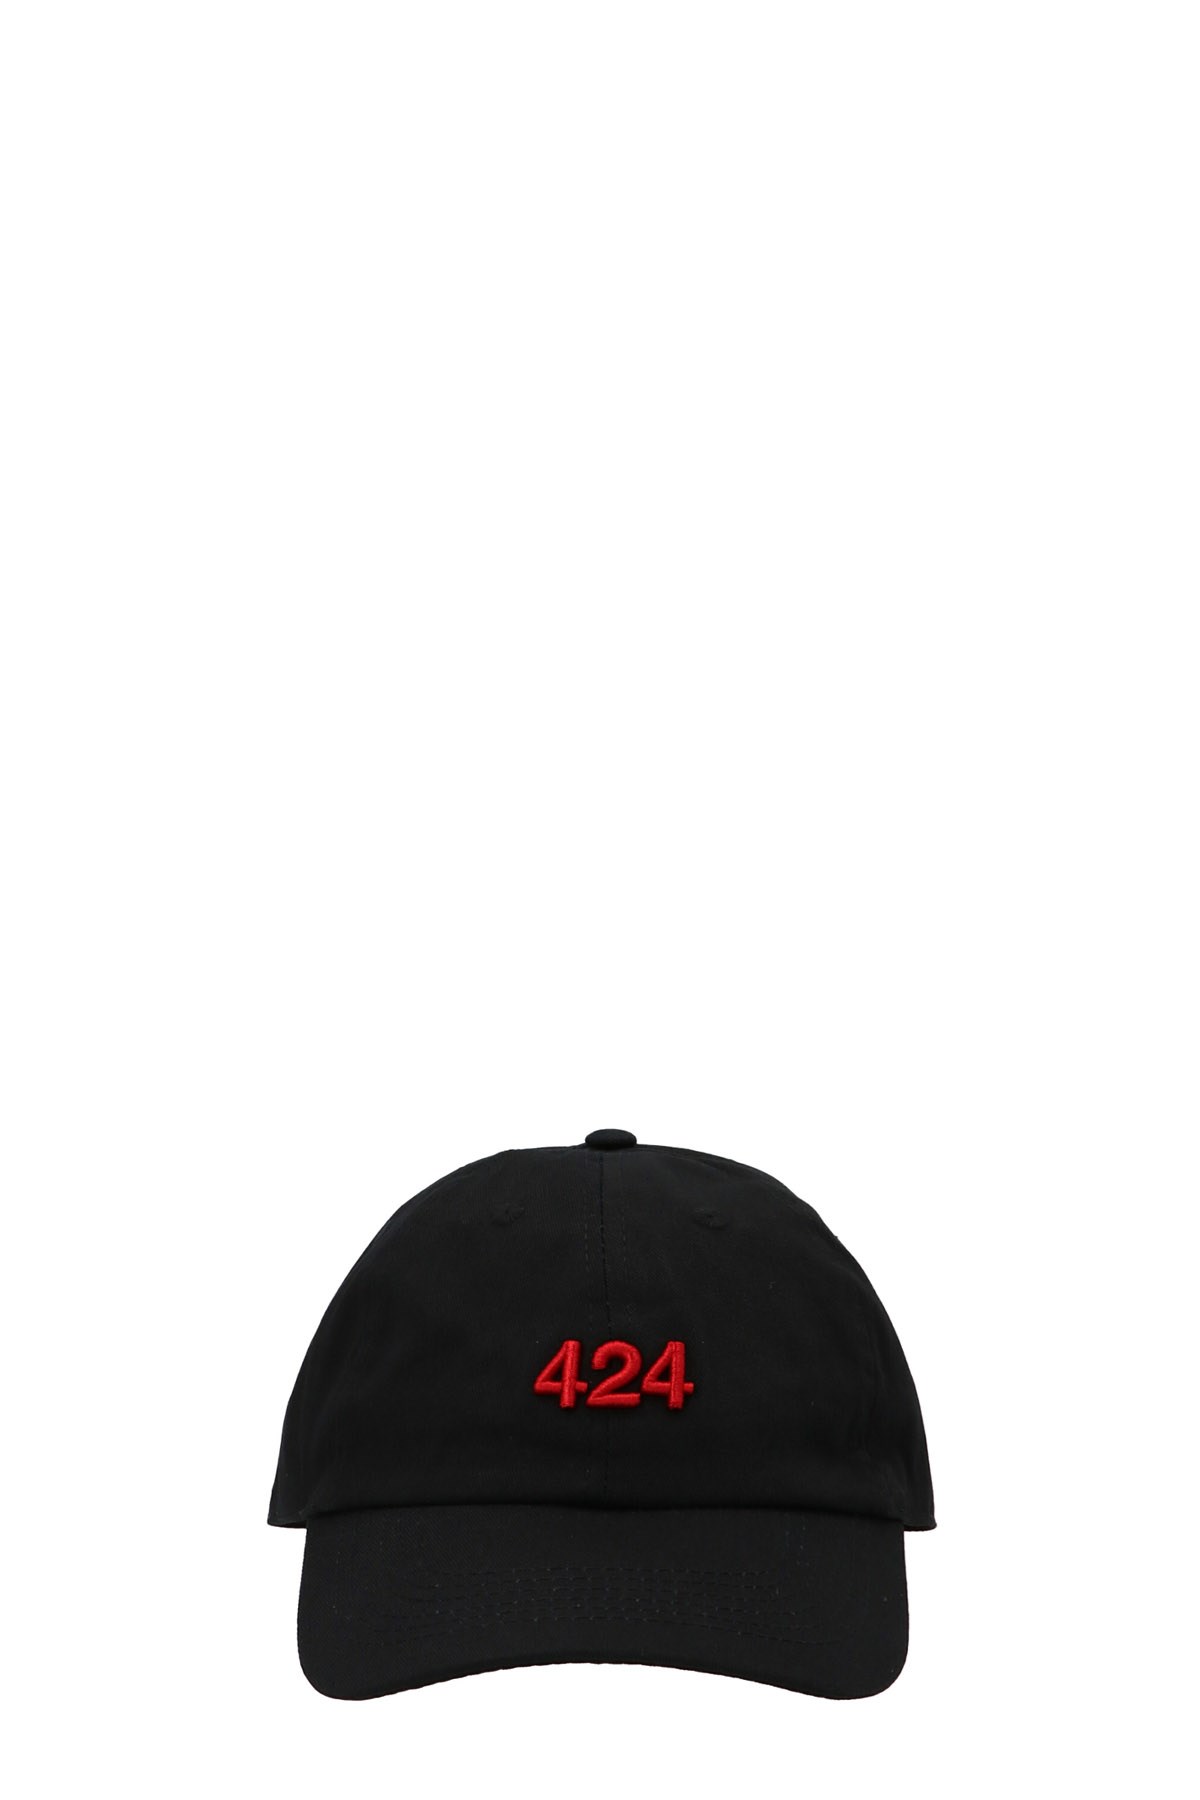 424 'Alias Heat’ Cap